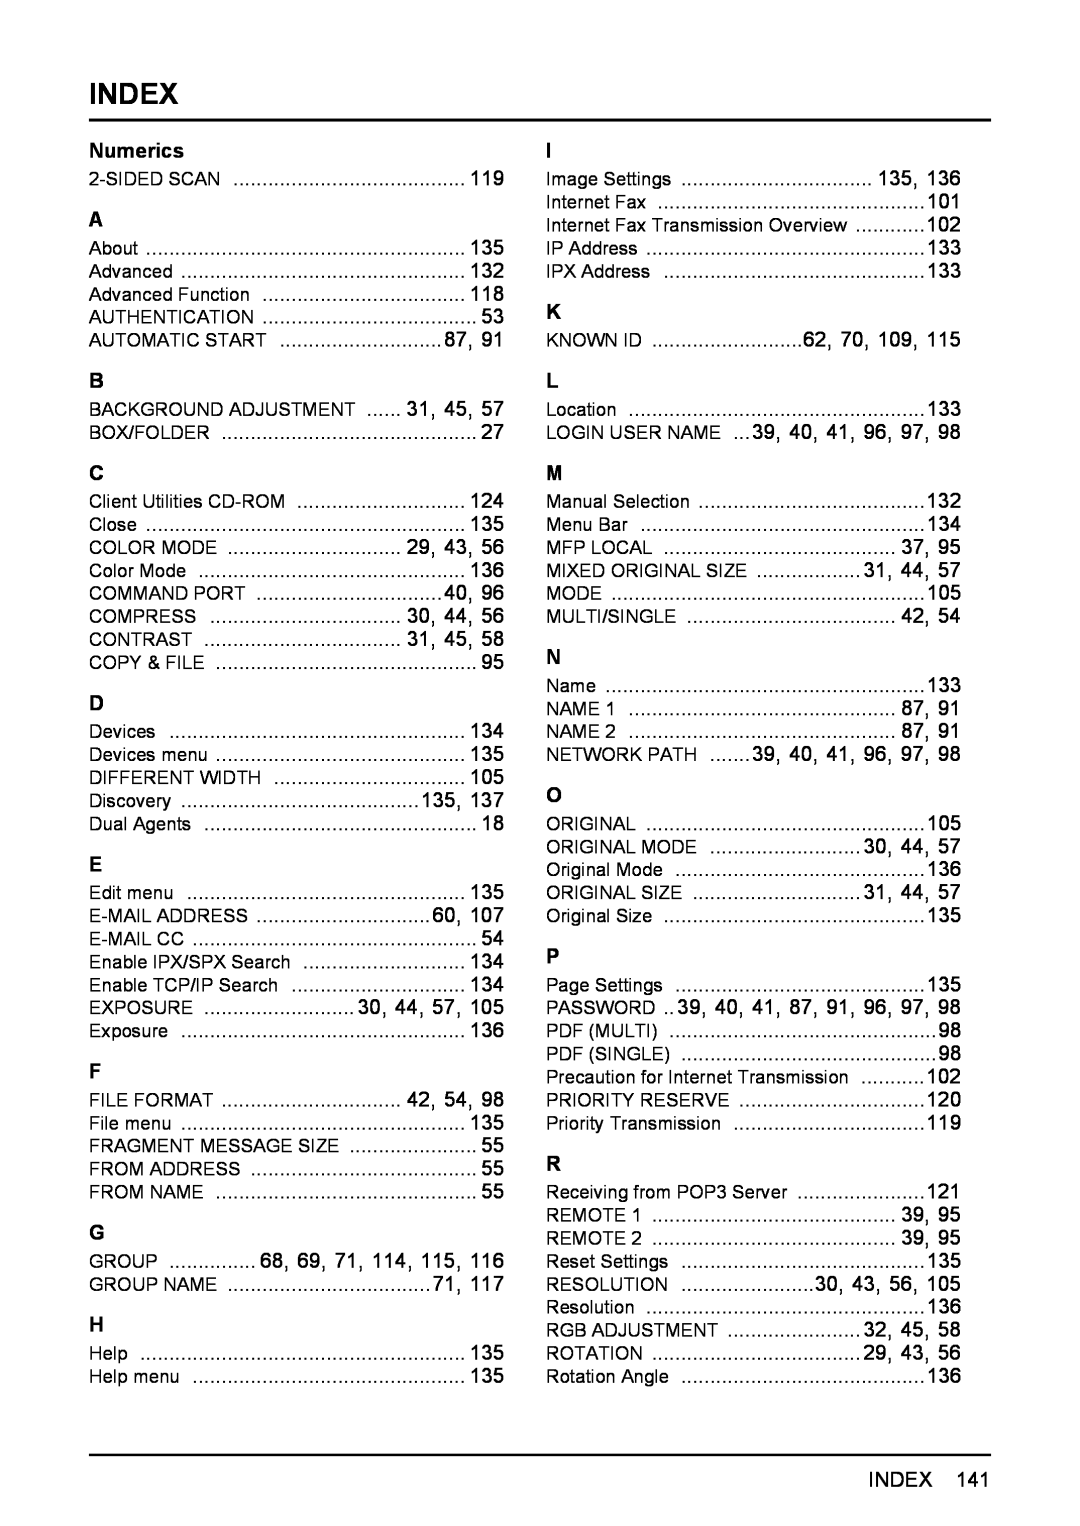 Toshiba 3510C, 3500C, 2500C manual Index 